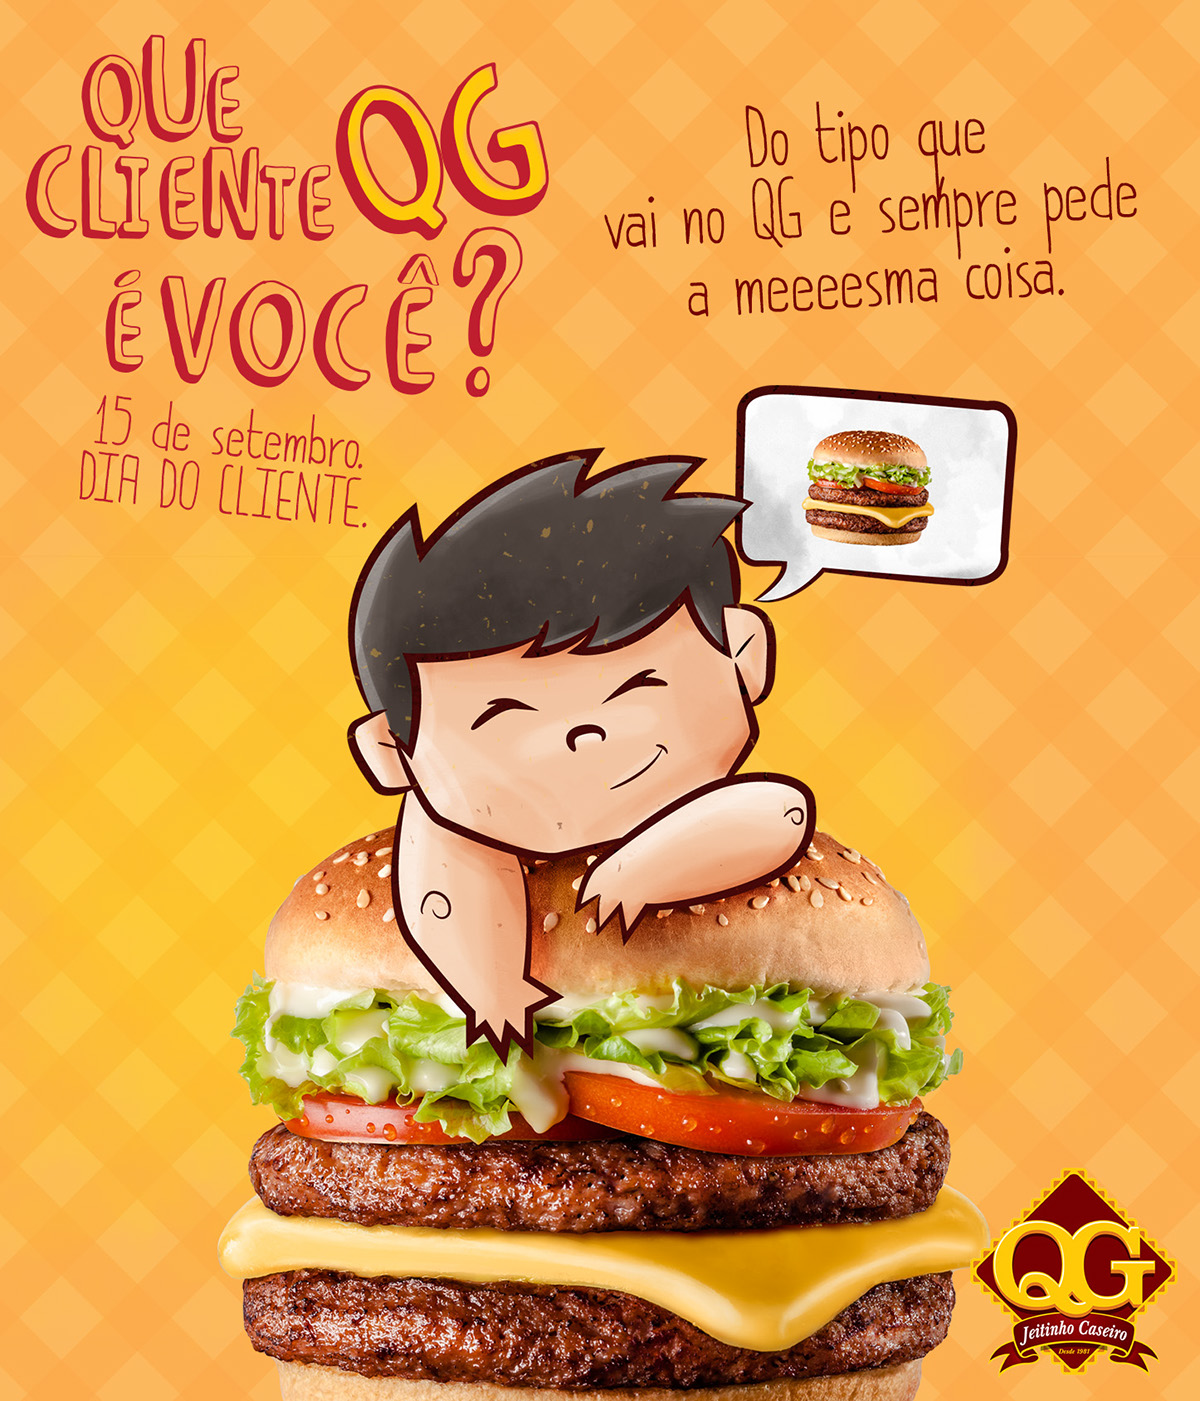 Client characters Fast food pastel grelhado hamburguer grilled personagem burger Cliente frango pastéis comida franquia franchise